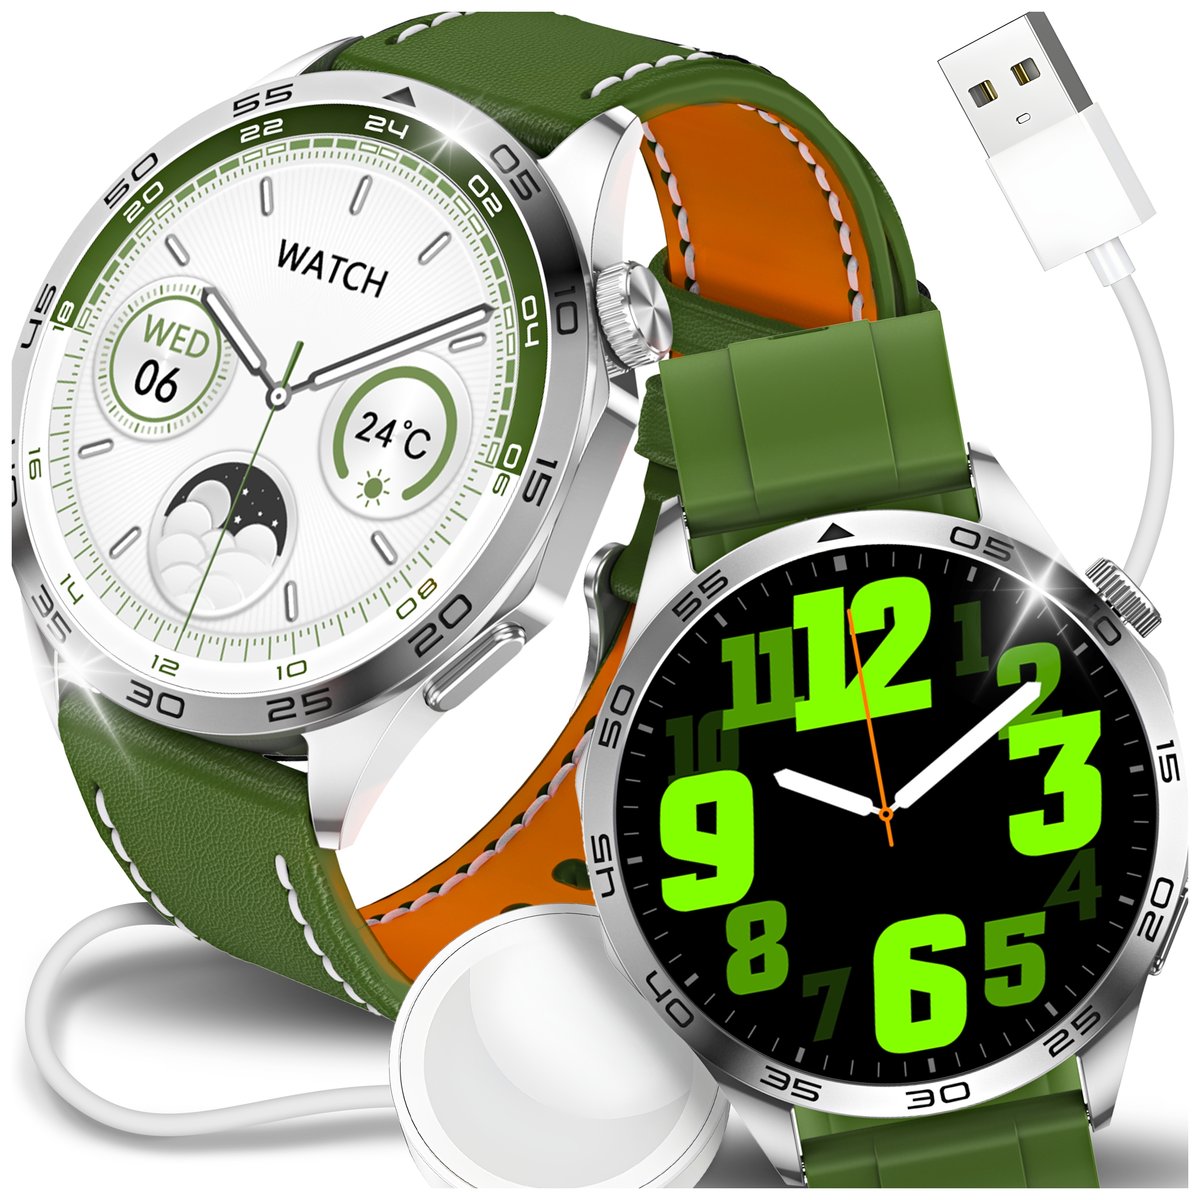 Zdjęcia - Smartwatche Smart Watch Smartwatch Zegarek Męski Rozmowy Polskie Menu Ciśnienie Powiadomienia Sms 